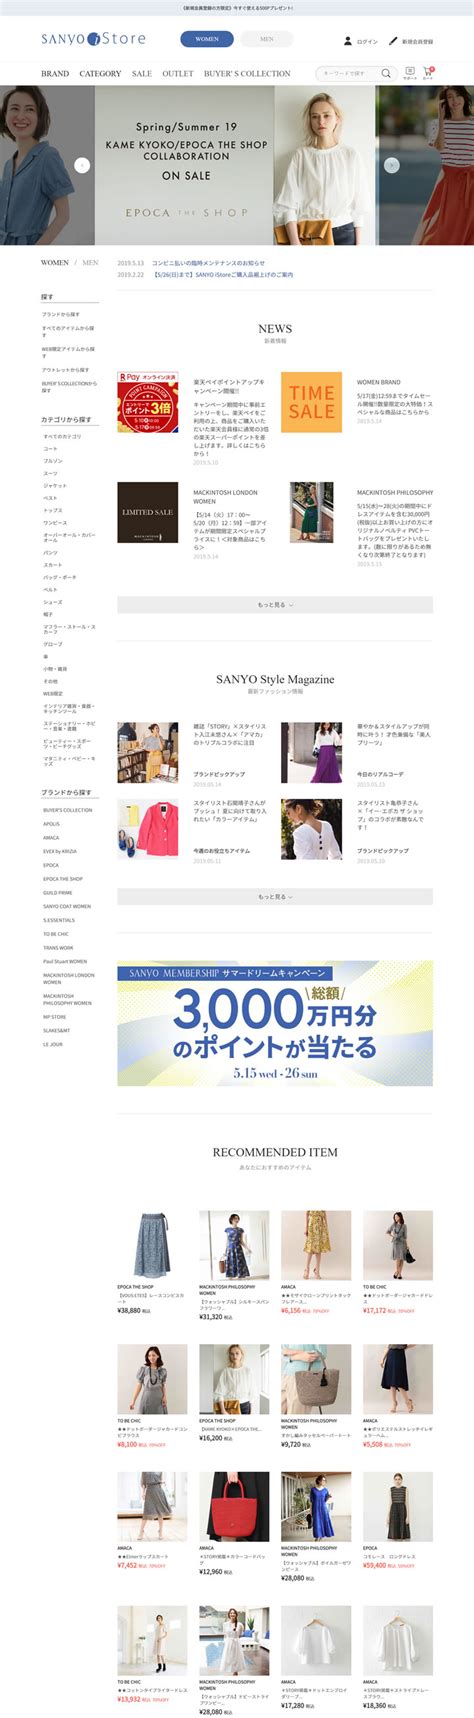 日本购物网站，樱花1688上都有些什么好物呢？ - 知乎